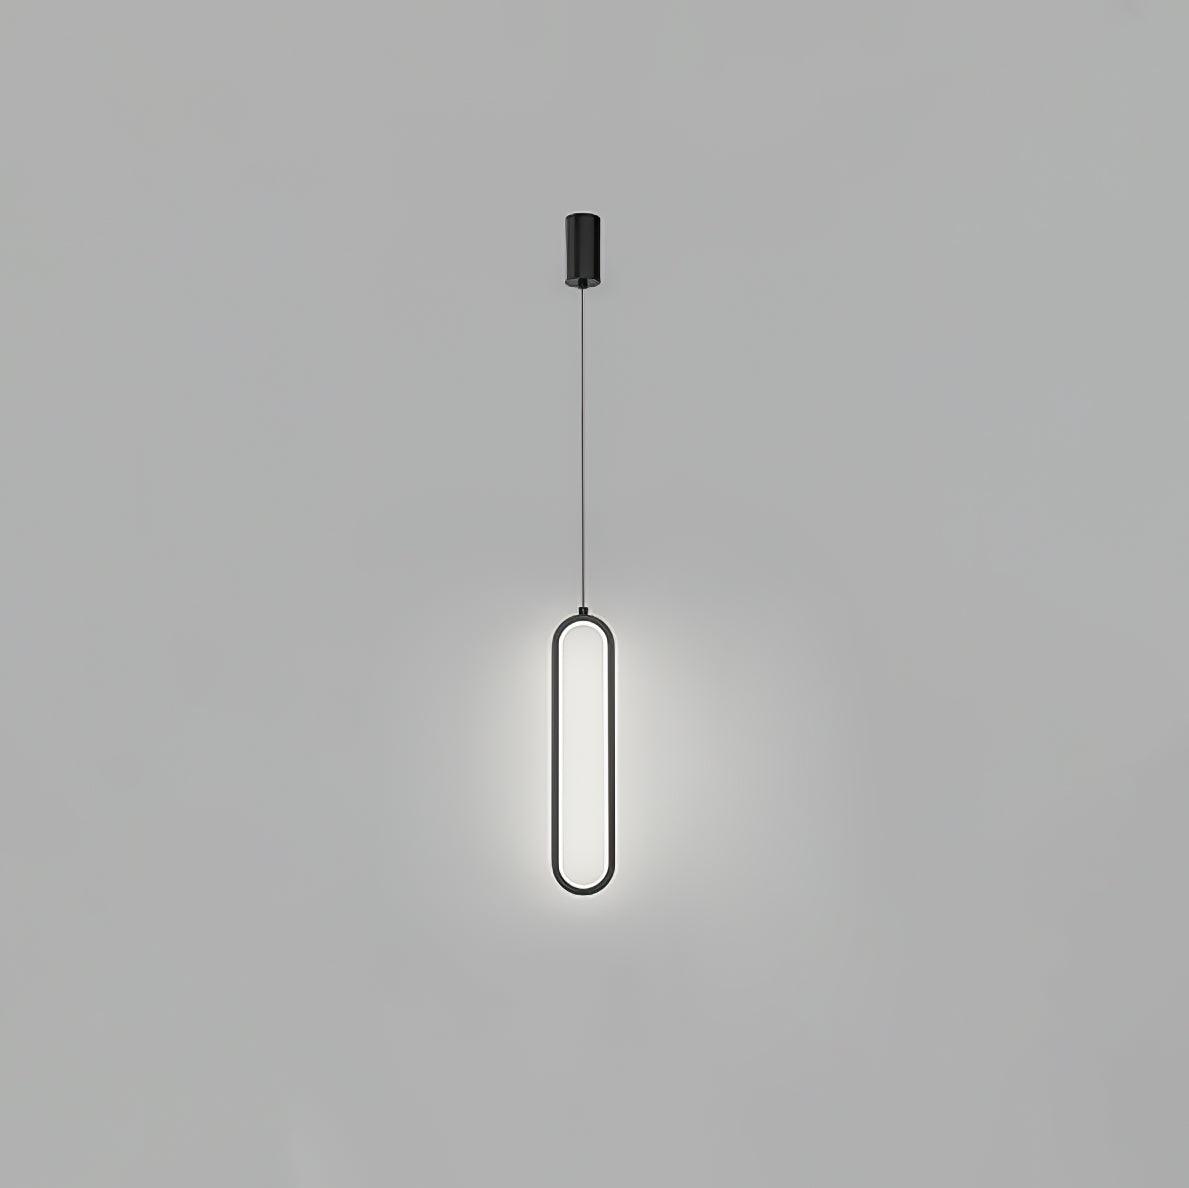 Long Oval LED Pendant Lamp